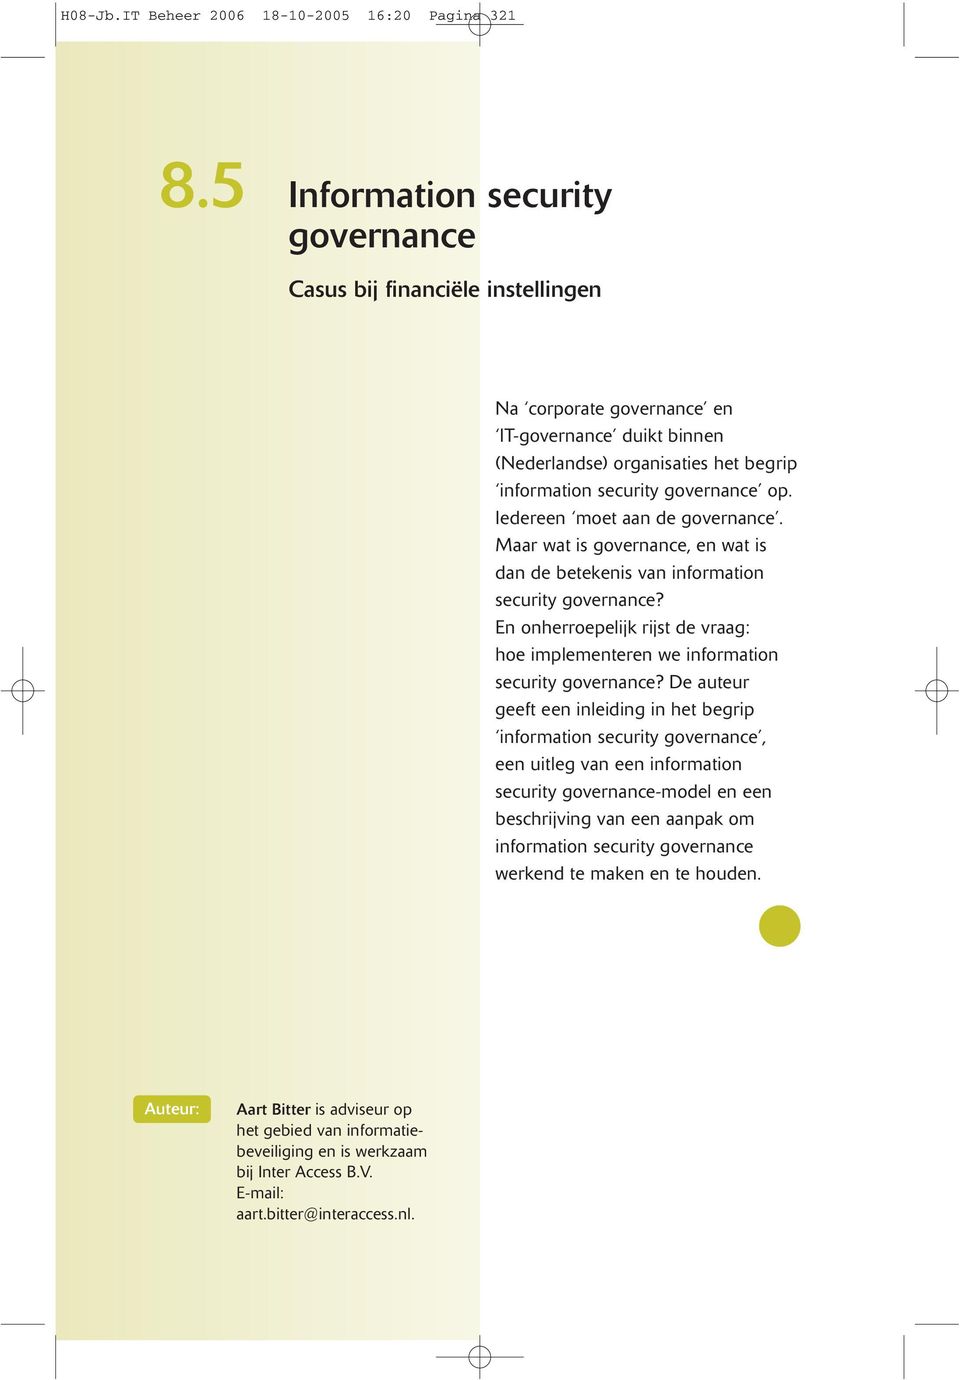 Iedereen moet aan de governance. Maar wat is governance, en wat is dan de betekenis van information security governance?